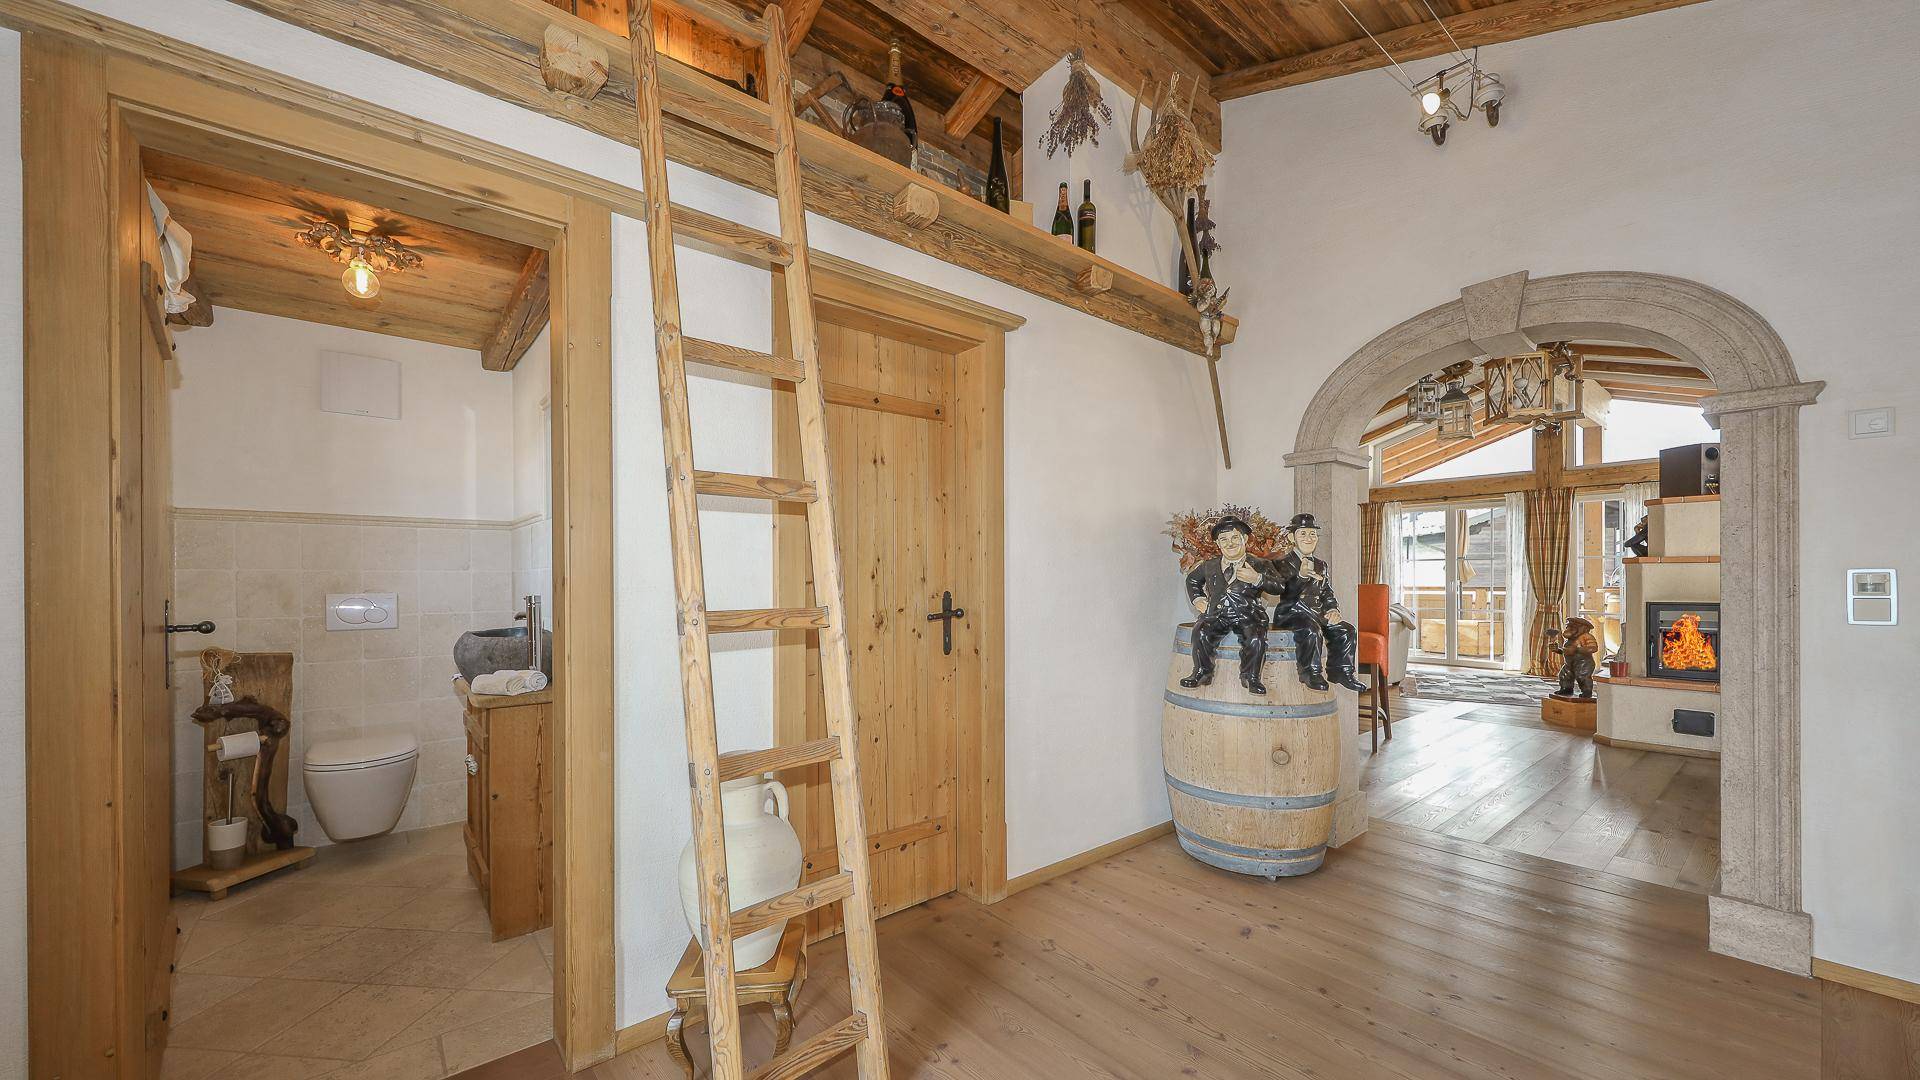 KITZIMMO-exklusives Einfamilienhaus in Toplage kaufen - Immobilien St. Johann in Tirol.